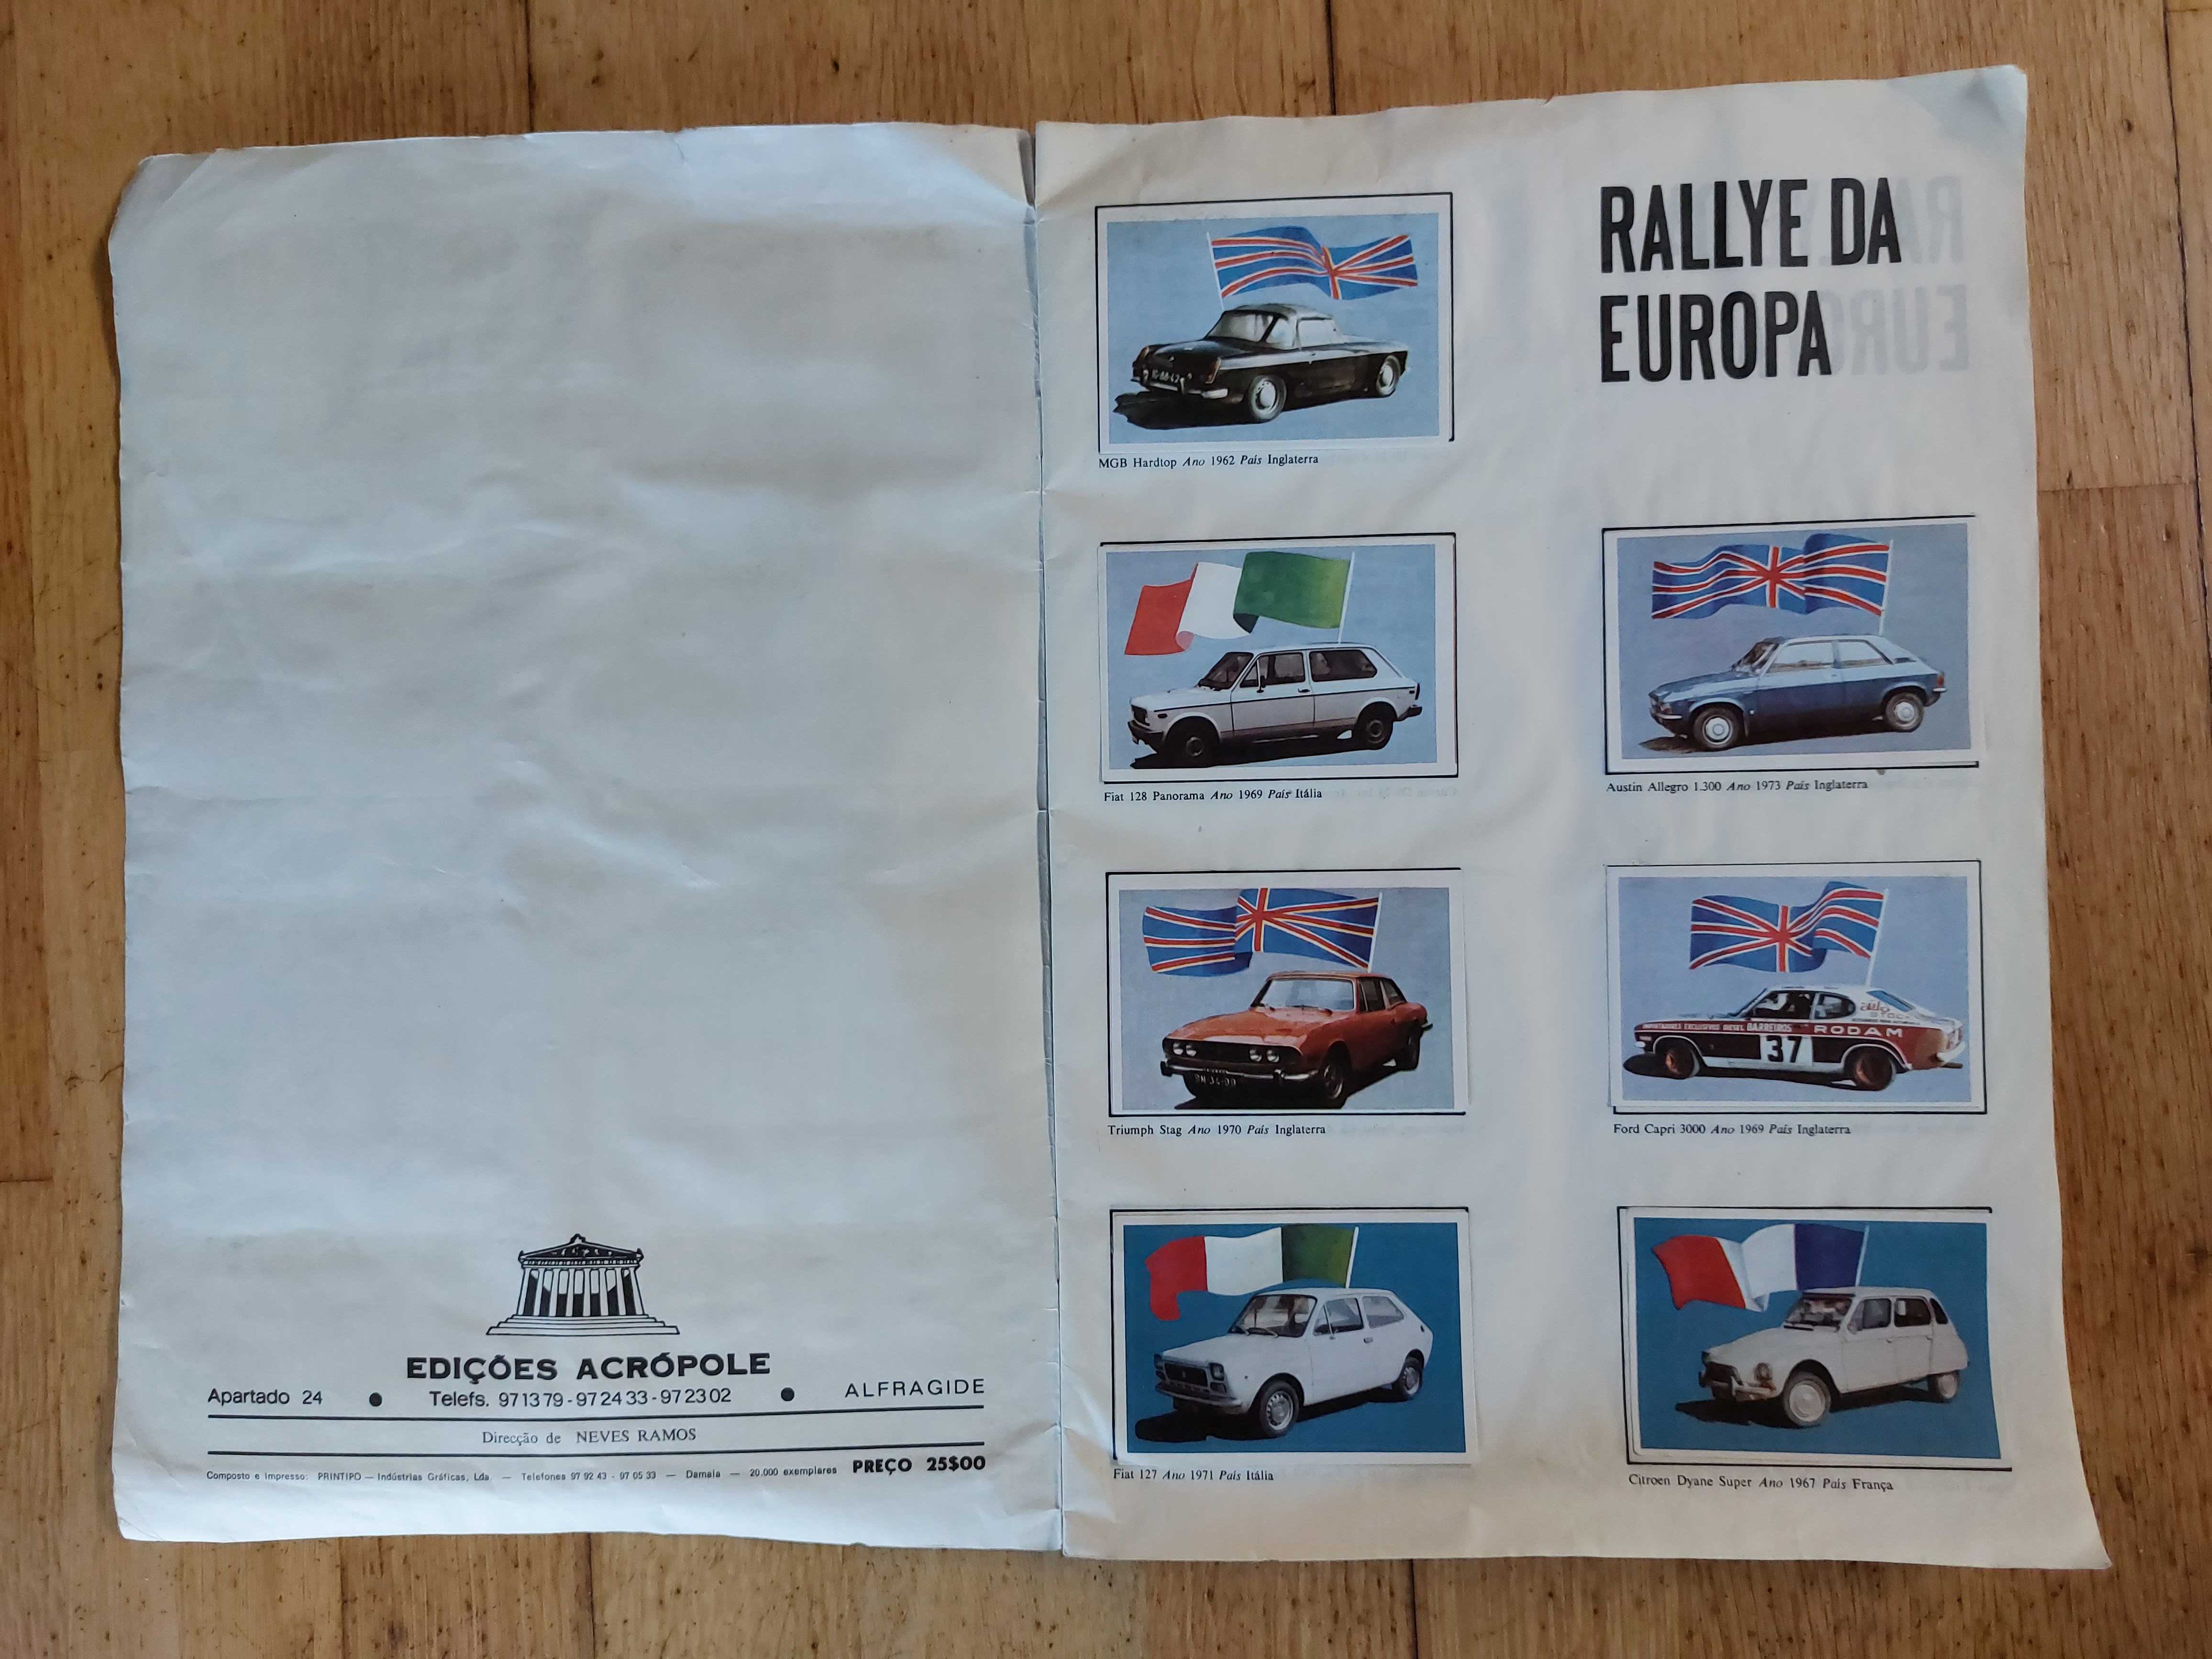 Colecção de cromos "Rallye da Europa" - Completa